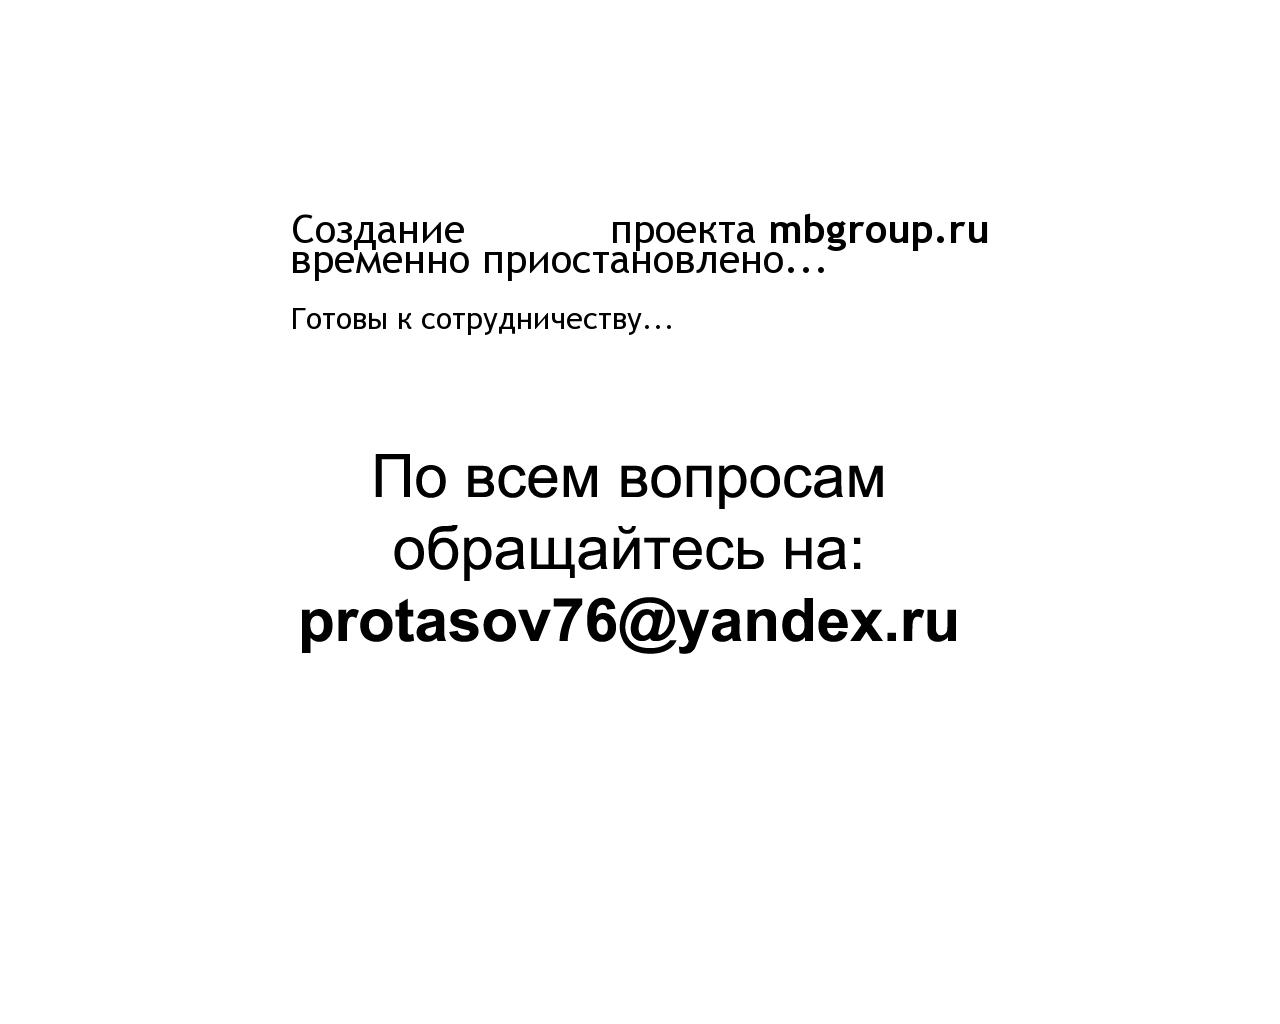 Изображение сайта mbgroup.ru в разрешении 1280x1024